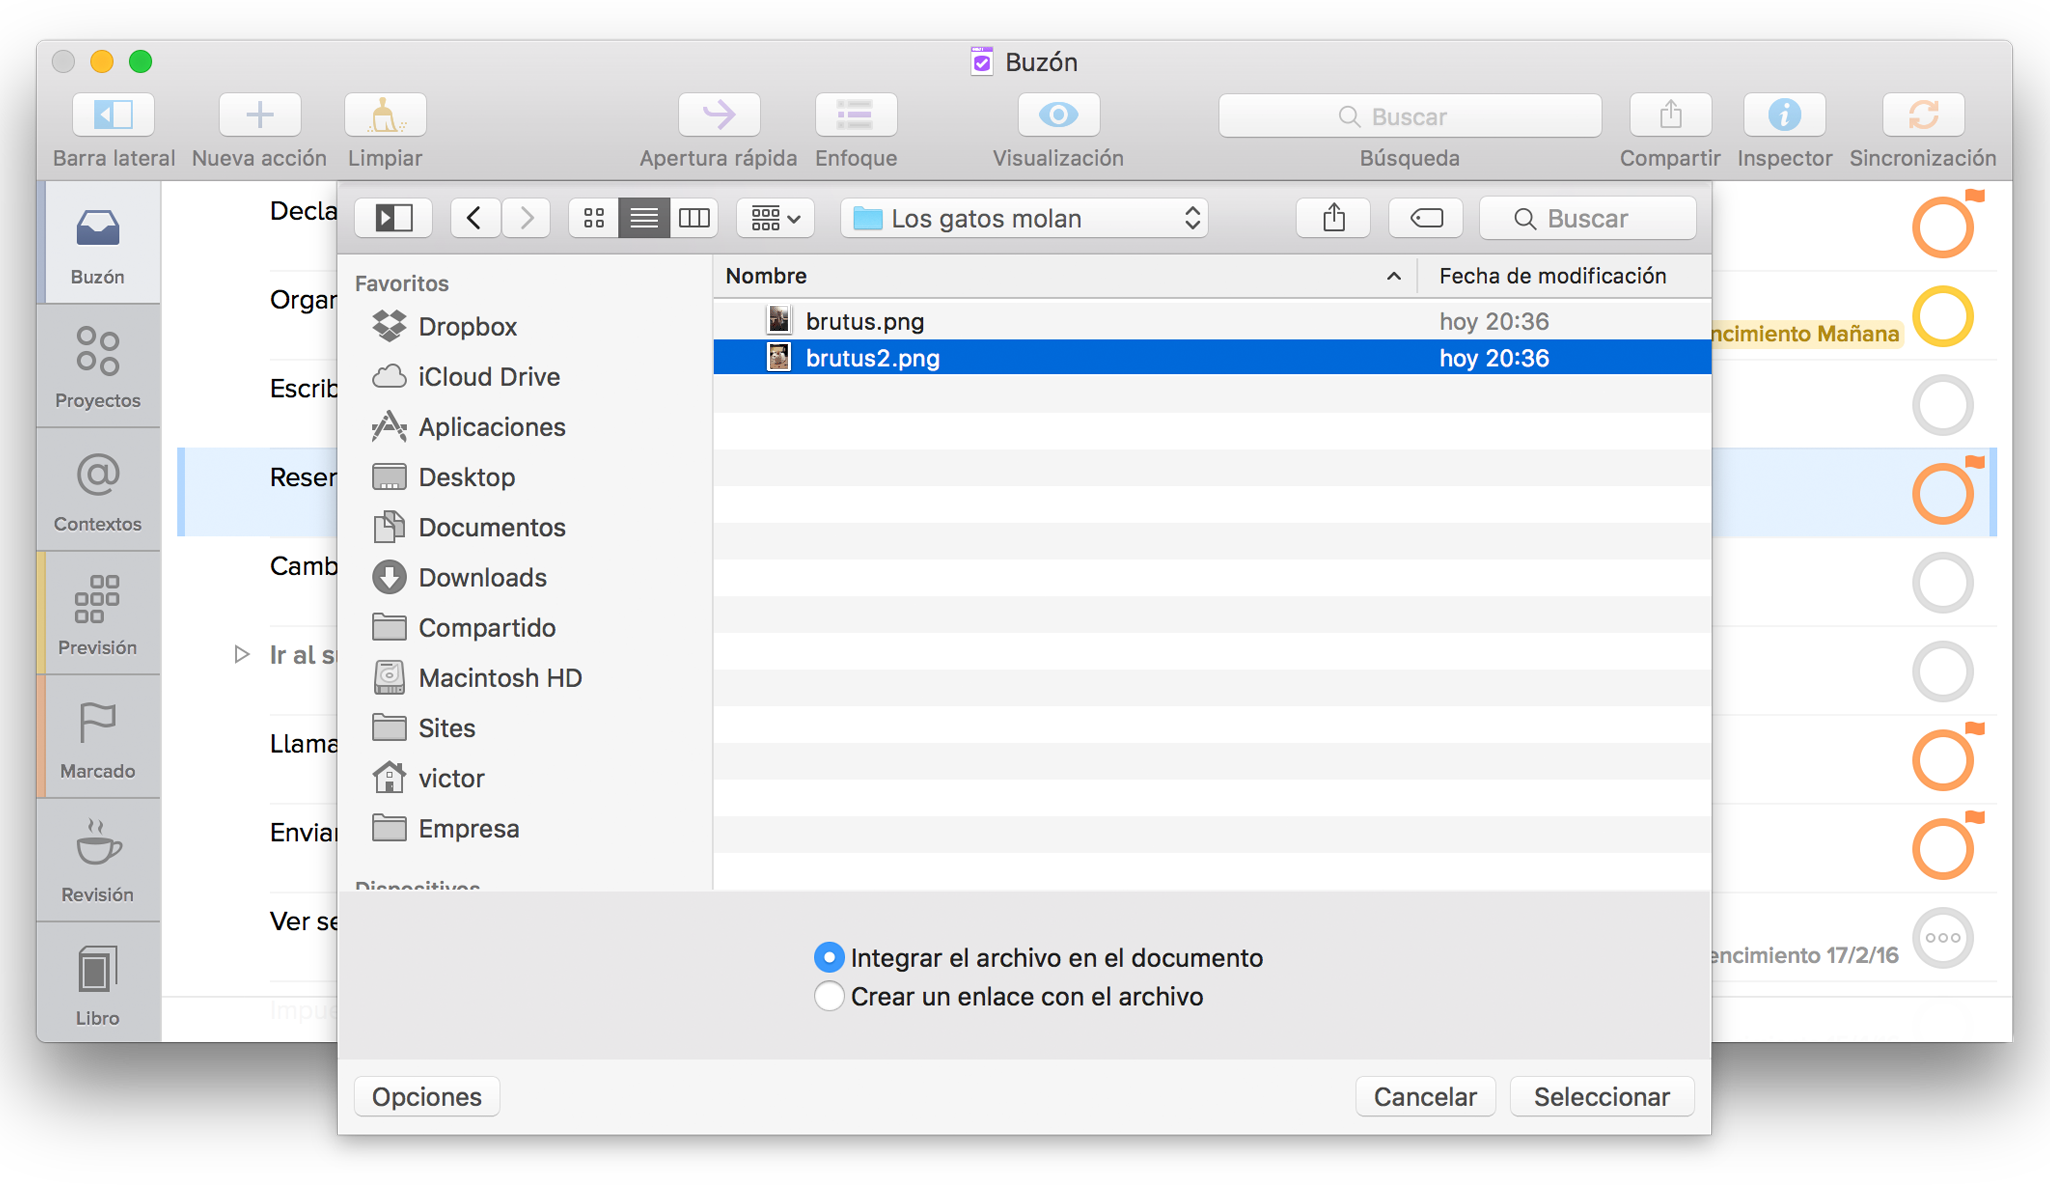 Outlook para Mac no puede arrastrar archivos adjuntos